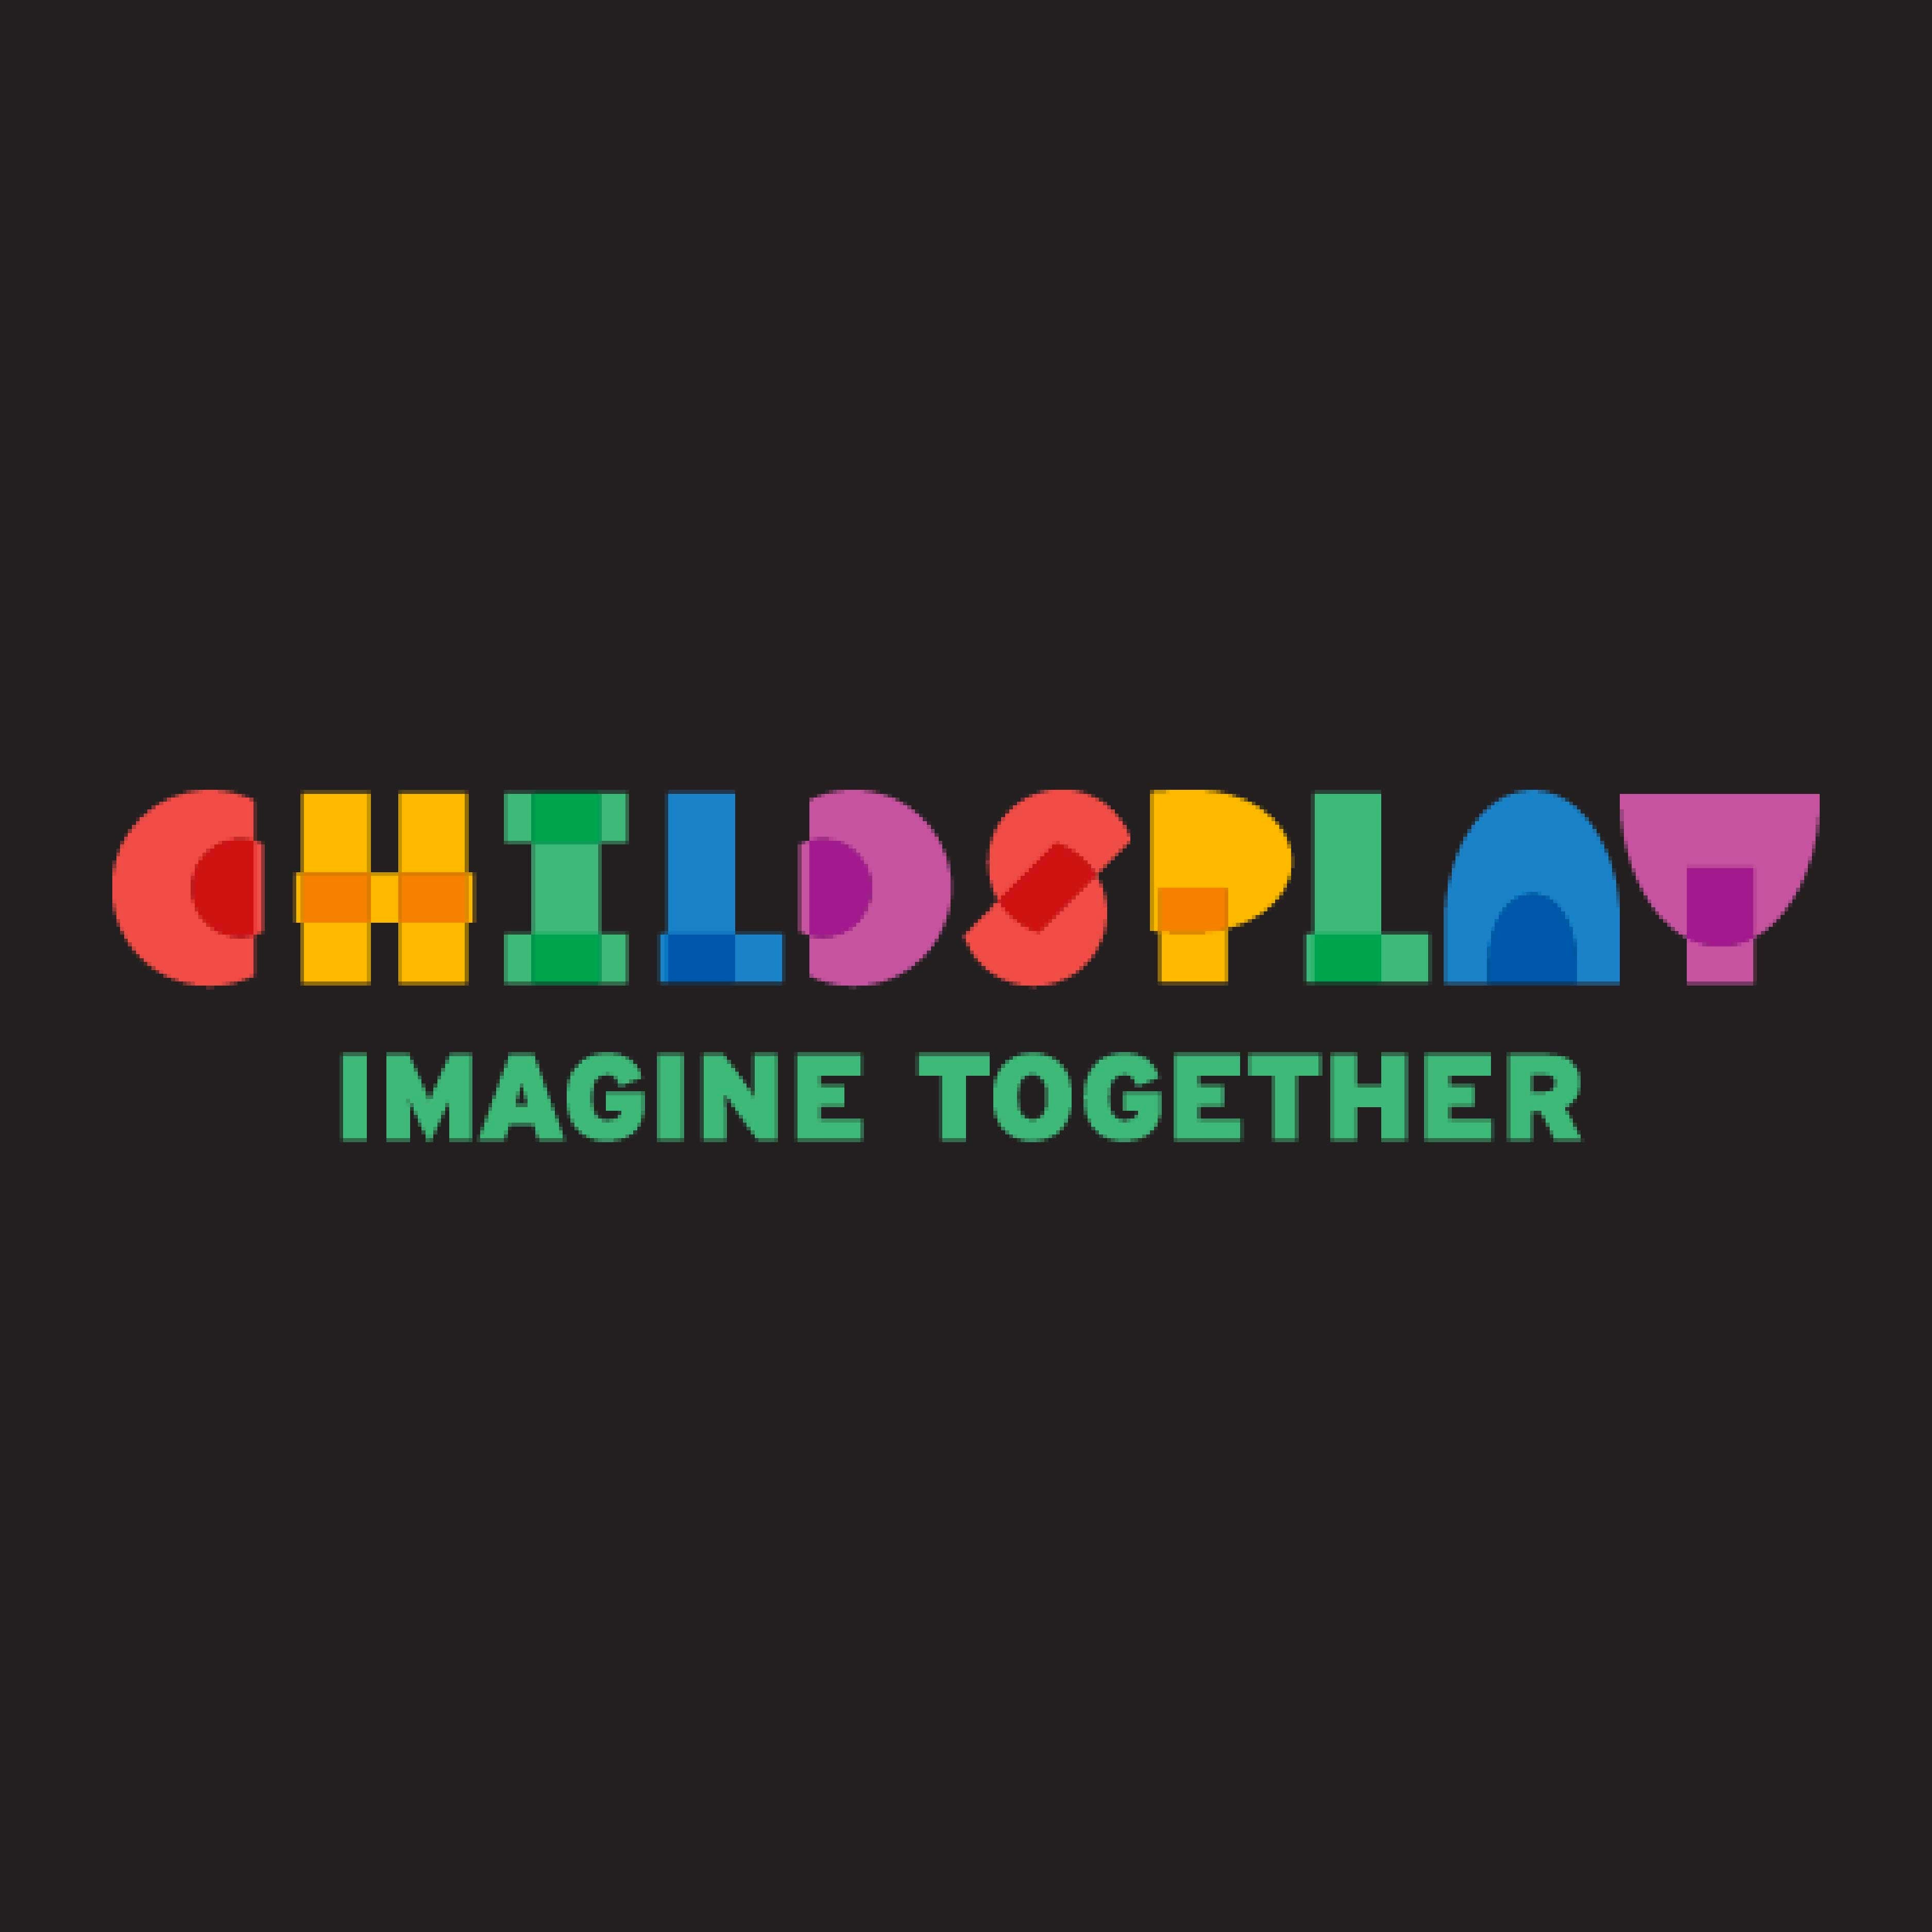 Childsplay-01.jpg